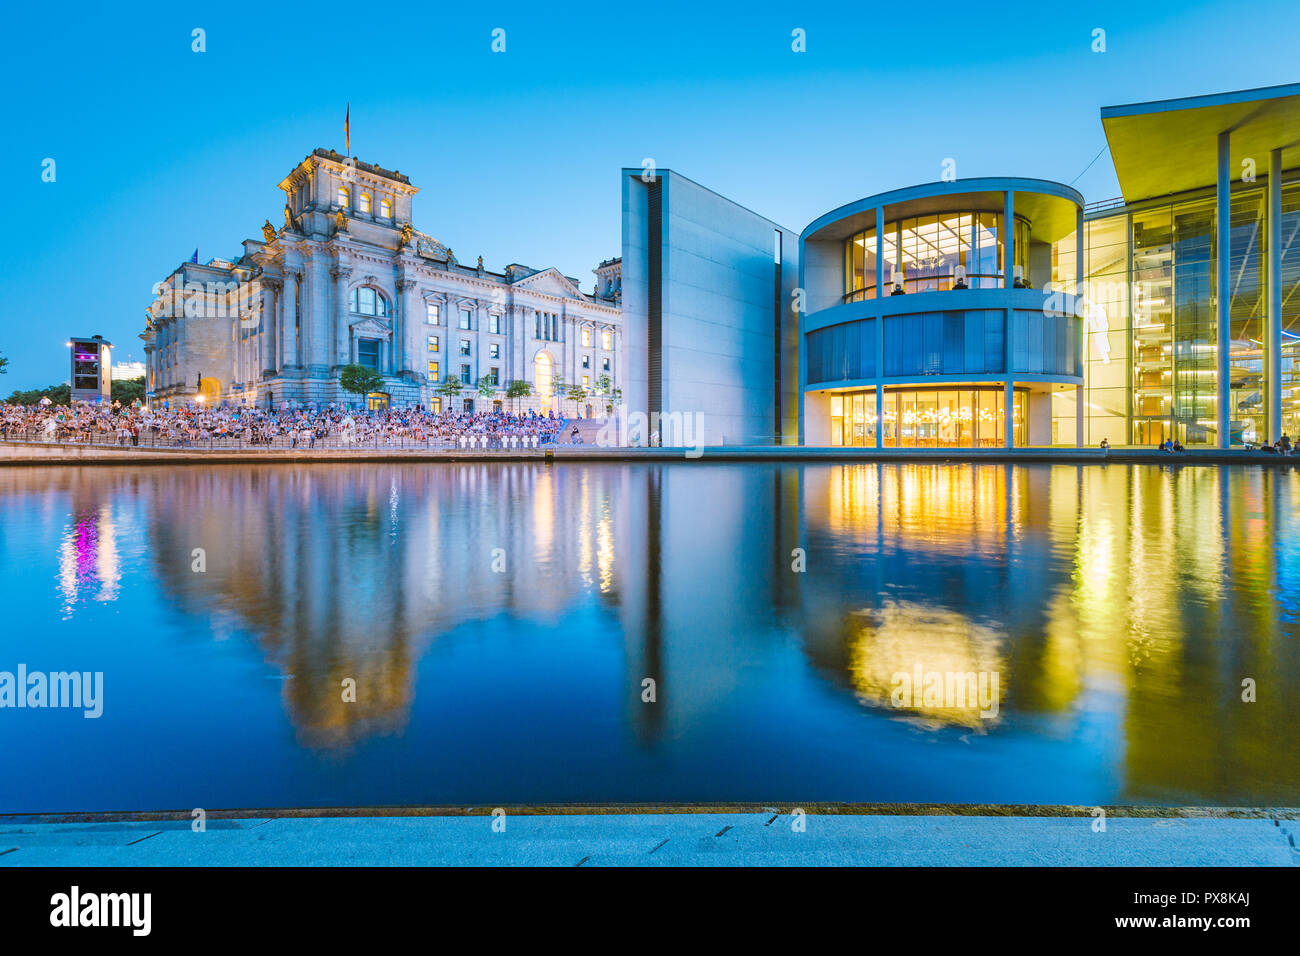 Panoramablick auf die Dämmerung Blick auf berühmte Berliner Regierungsviertel mit Spree während der Blauen Stunde in der Dämmerung, zentrale Berlin Mitte, Deutschland Stockfoto